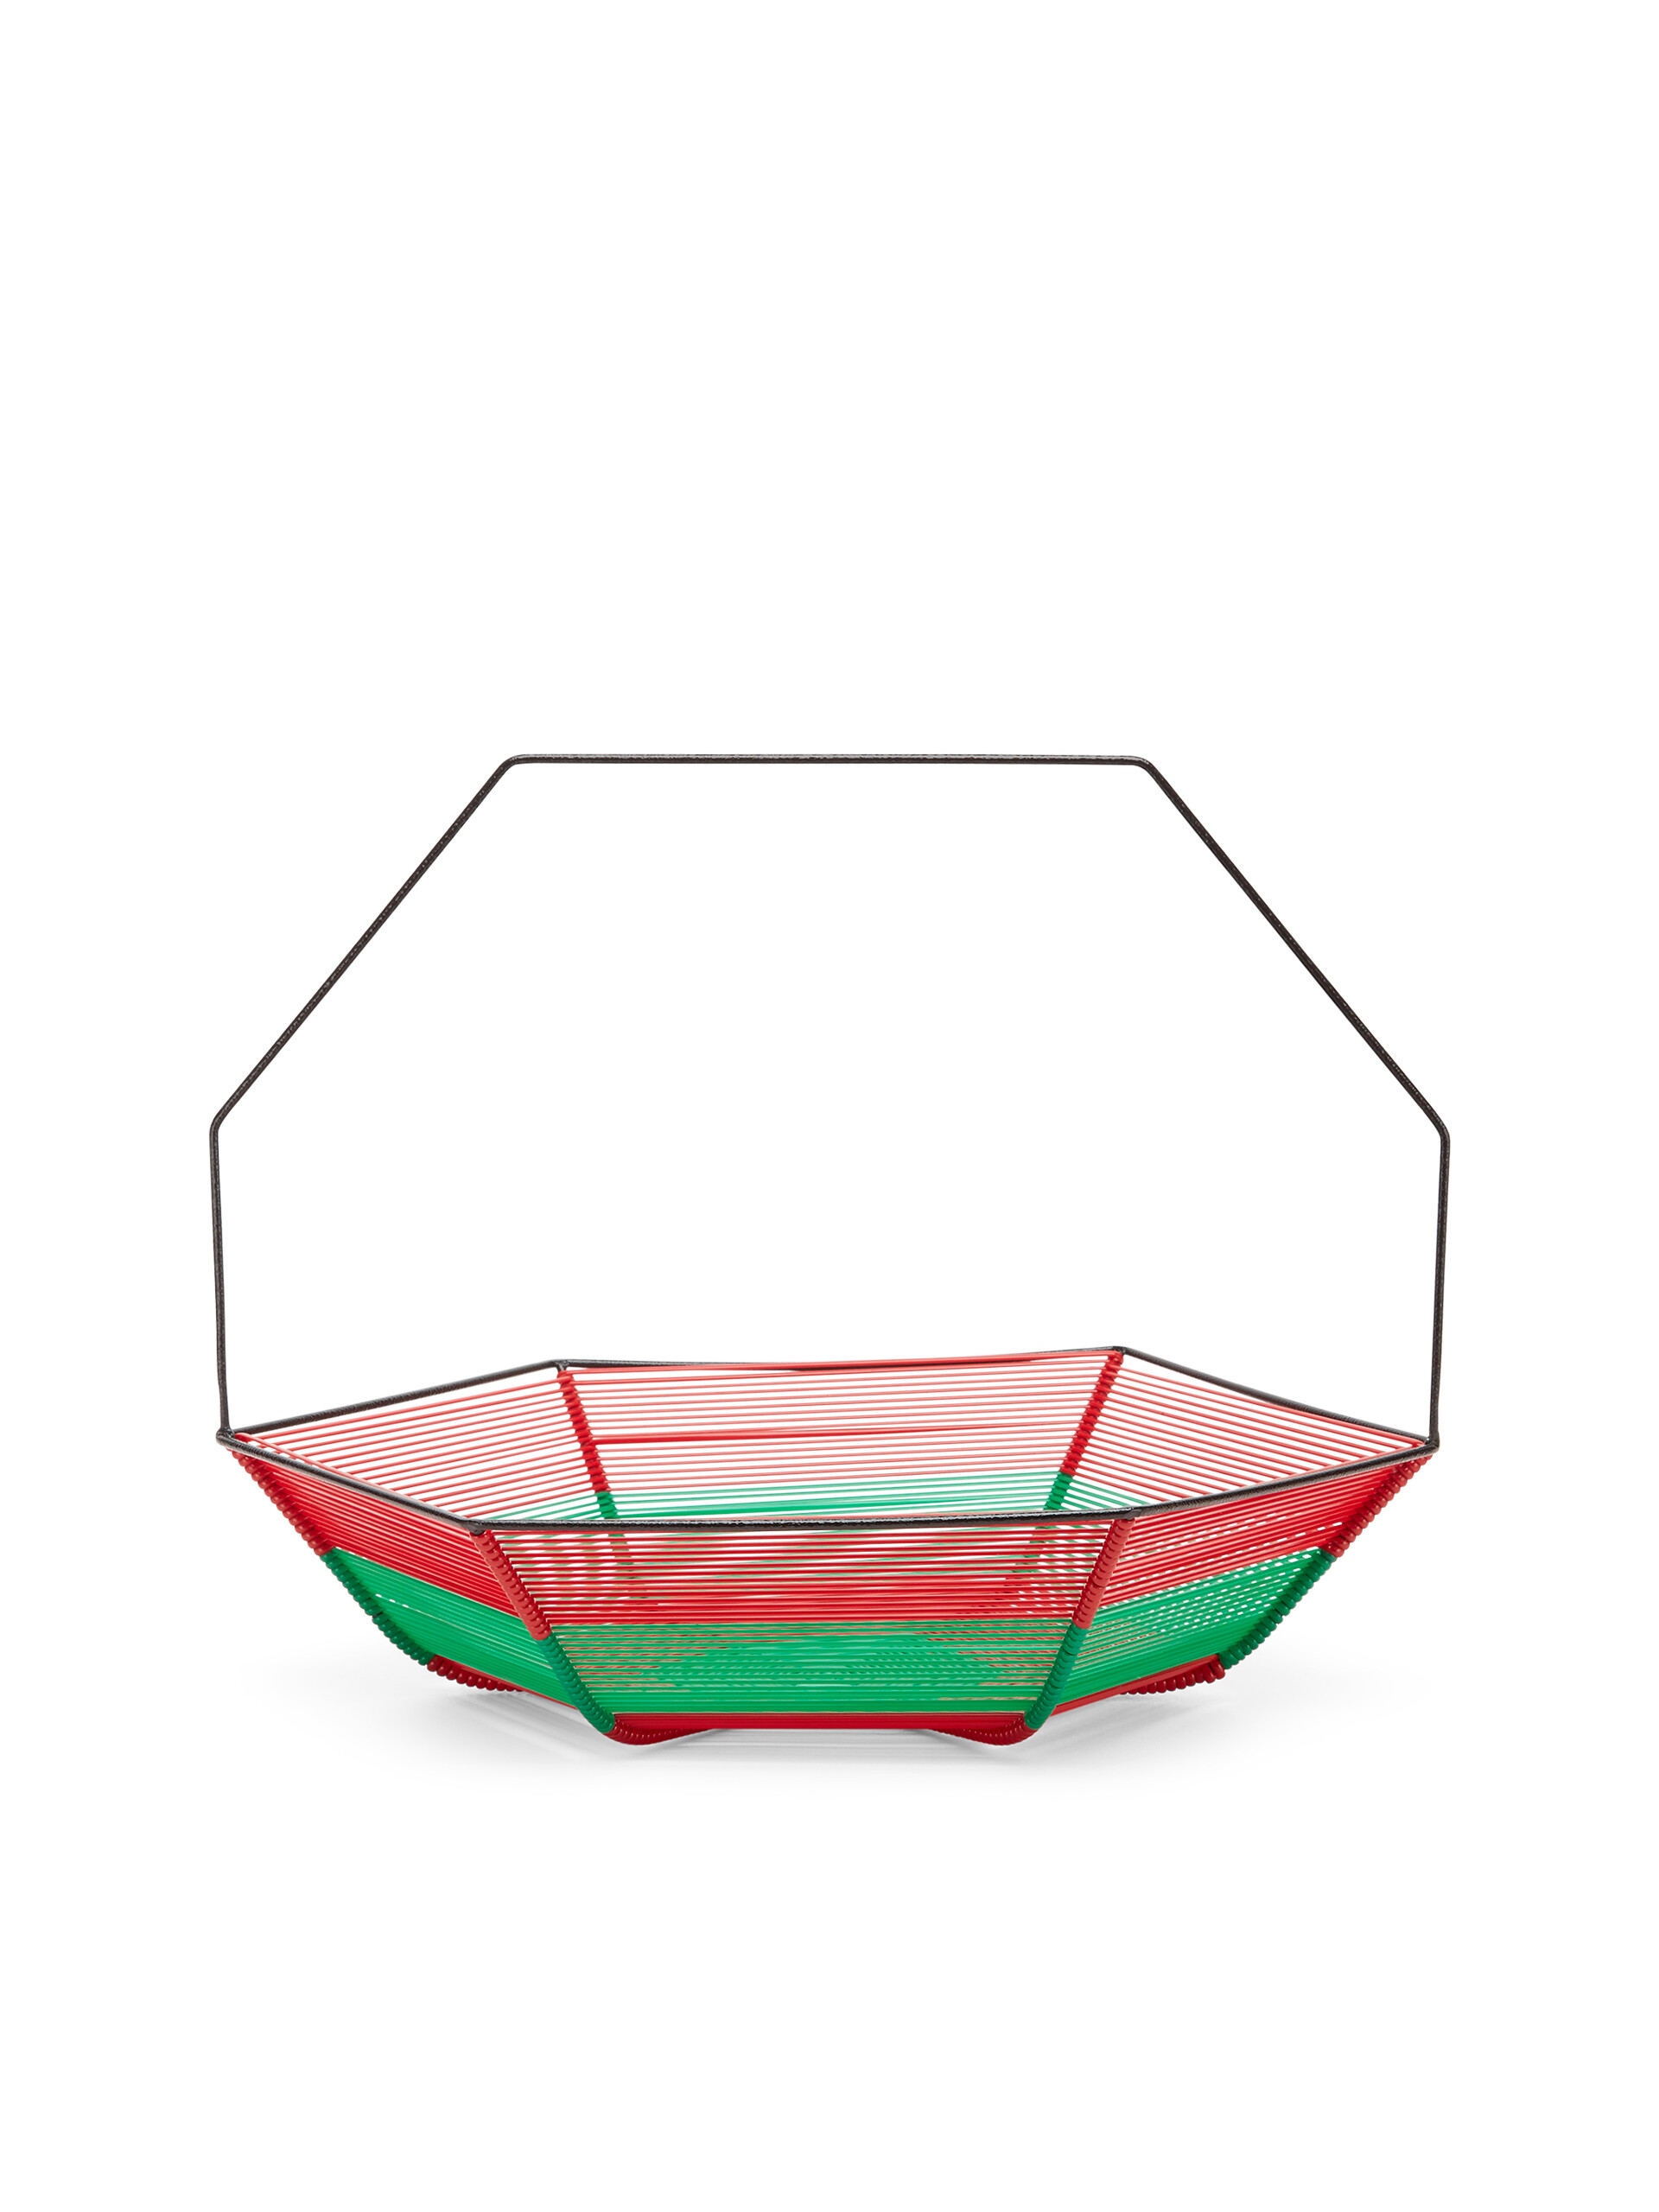 Portafrutta MARNI MARKET verde e rosso - Accessori - Image 3